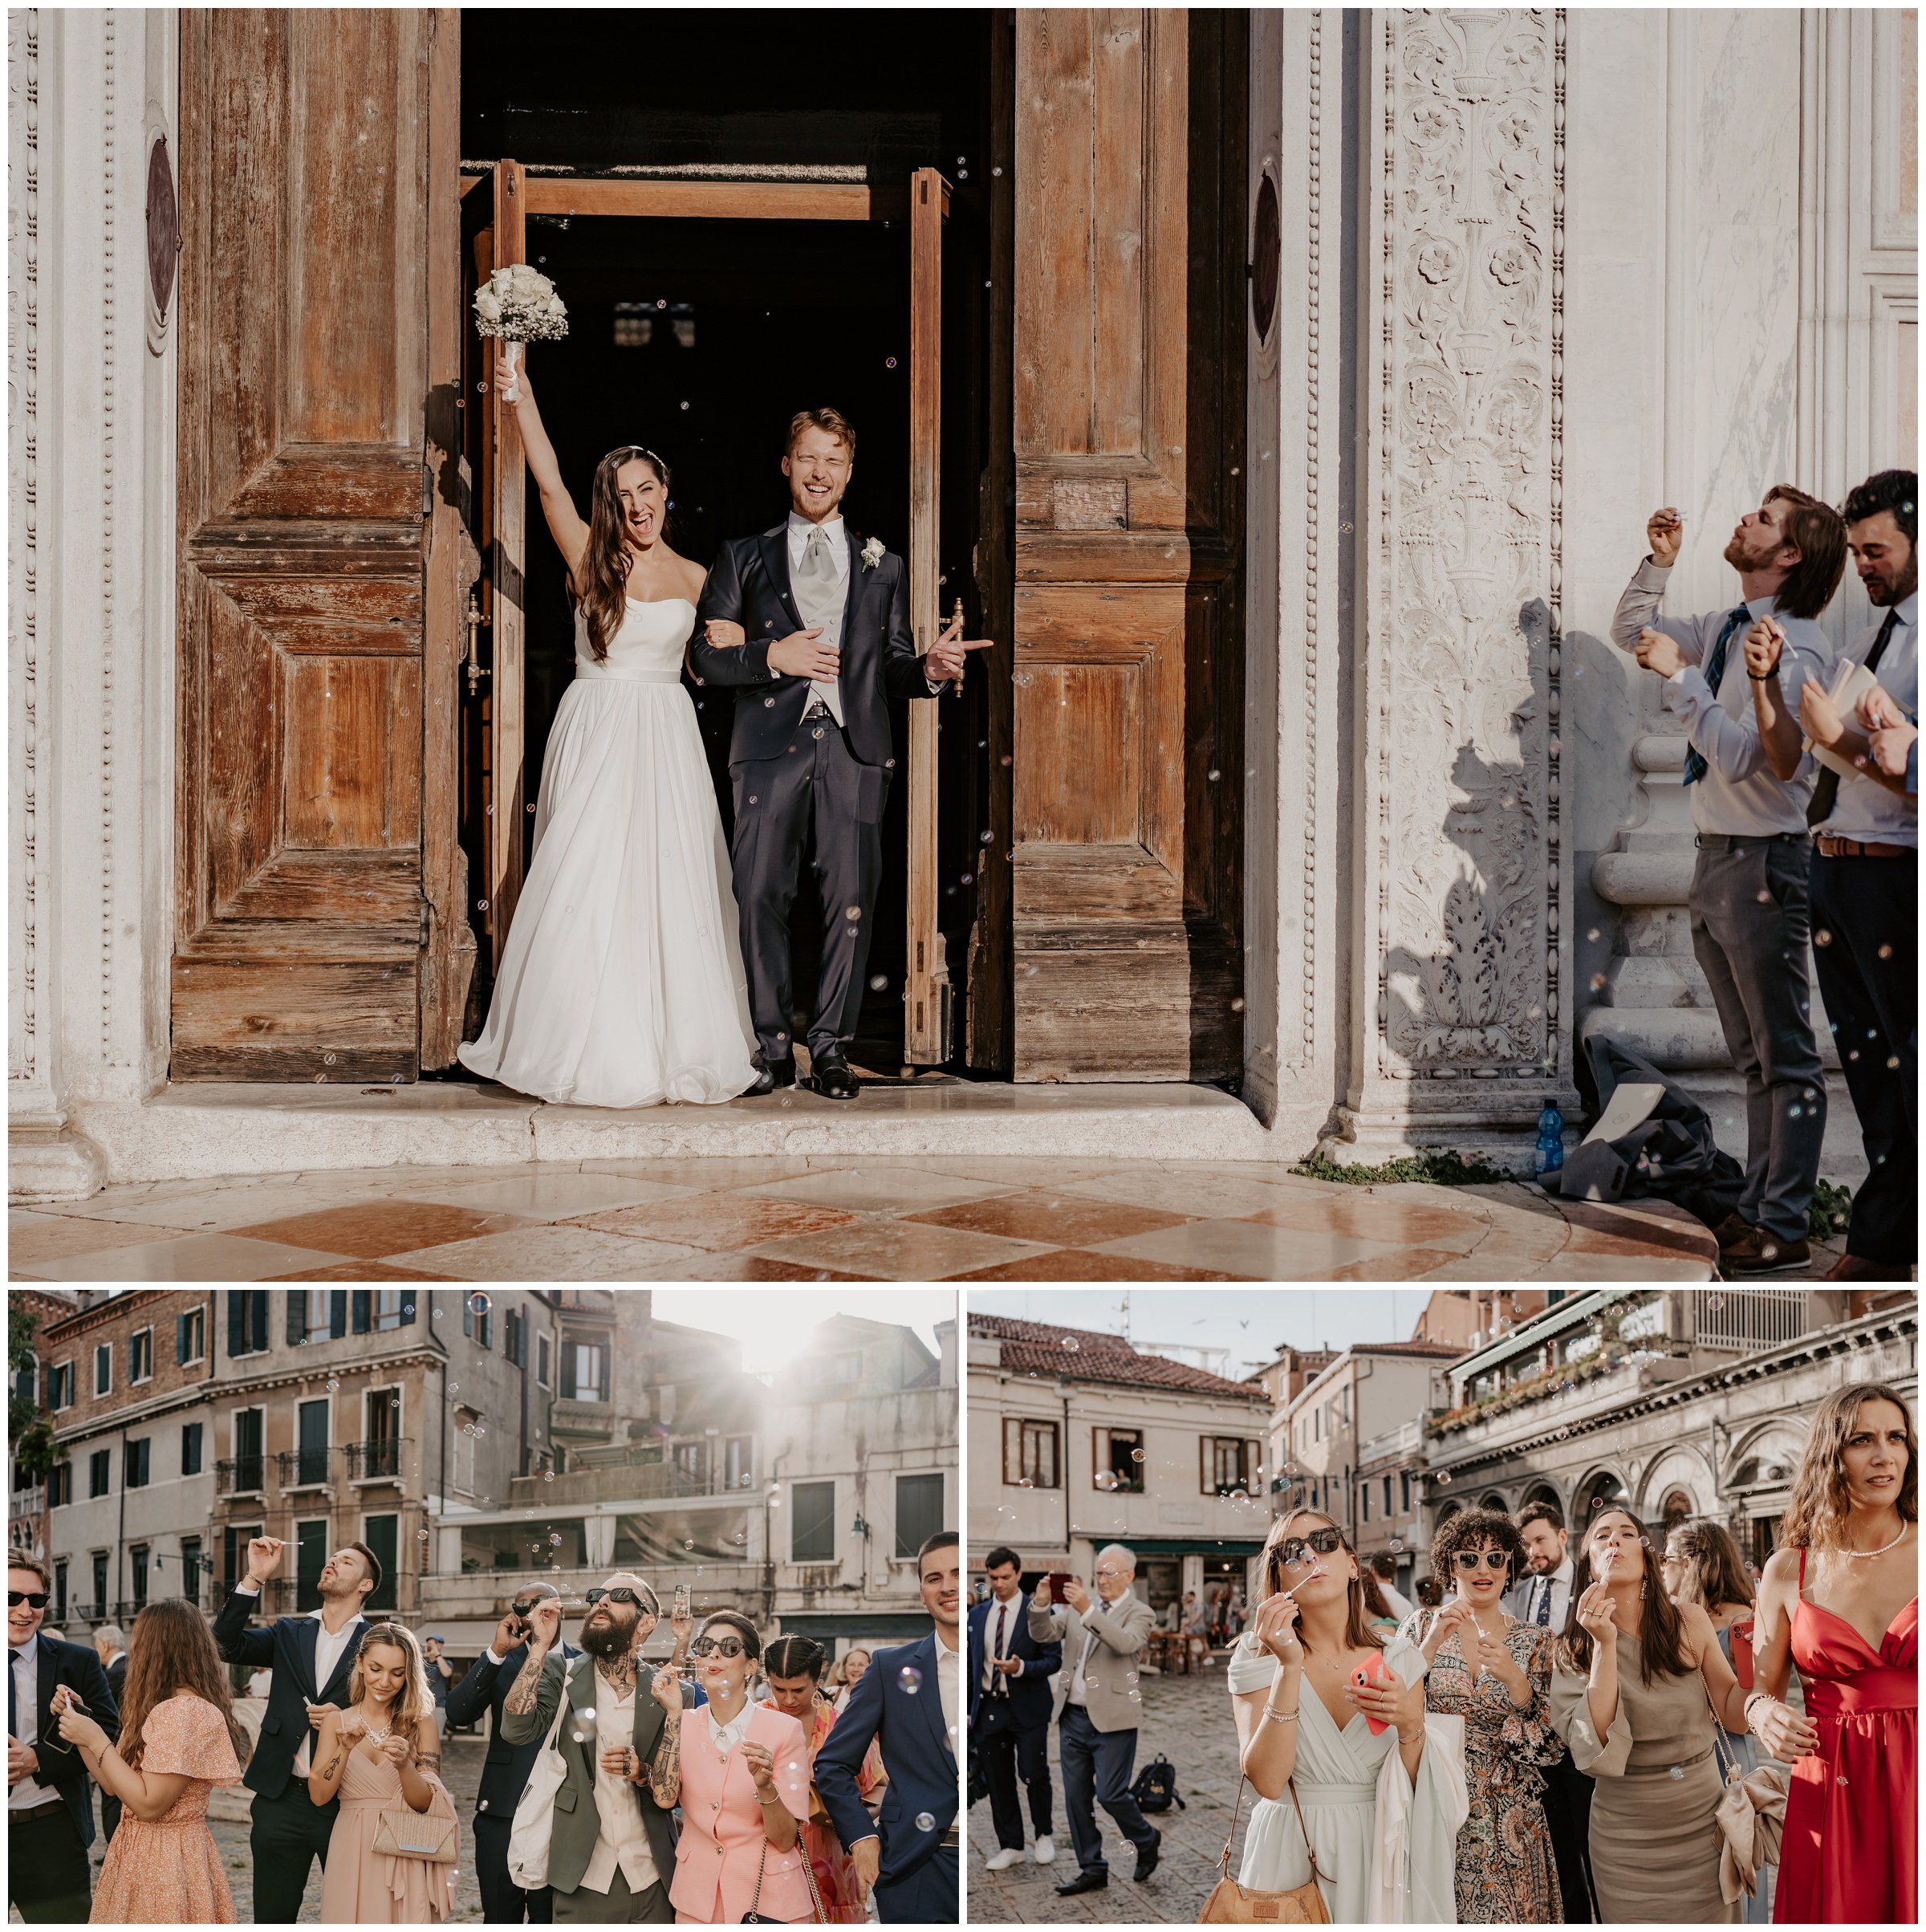 Matrimonio-san-servolo-fotografo-matrimonio-treviso-fotografo-matrimonio-venezia_0116.jpg